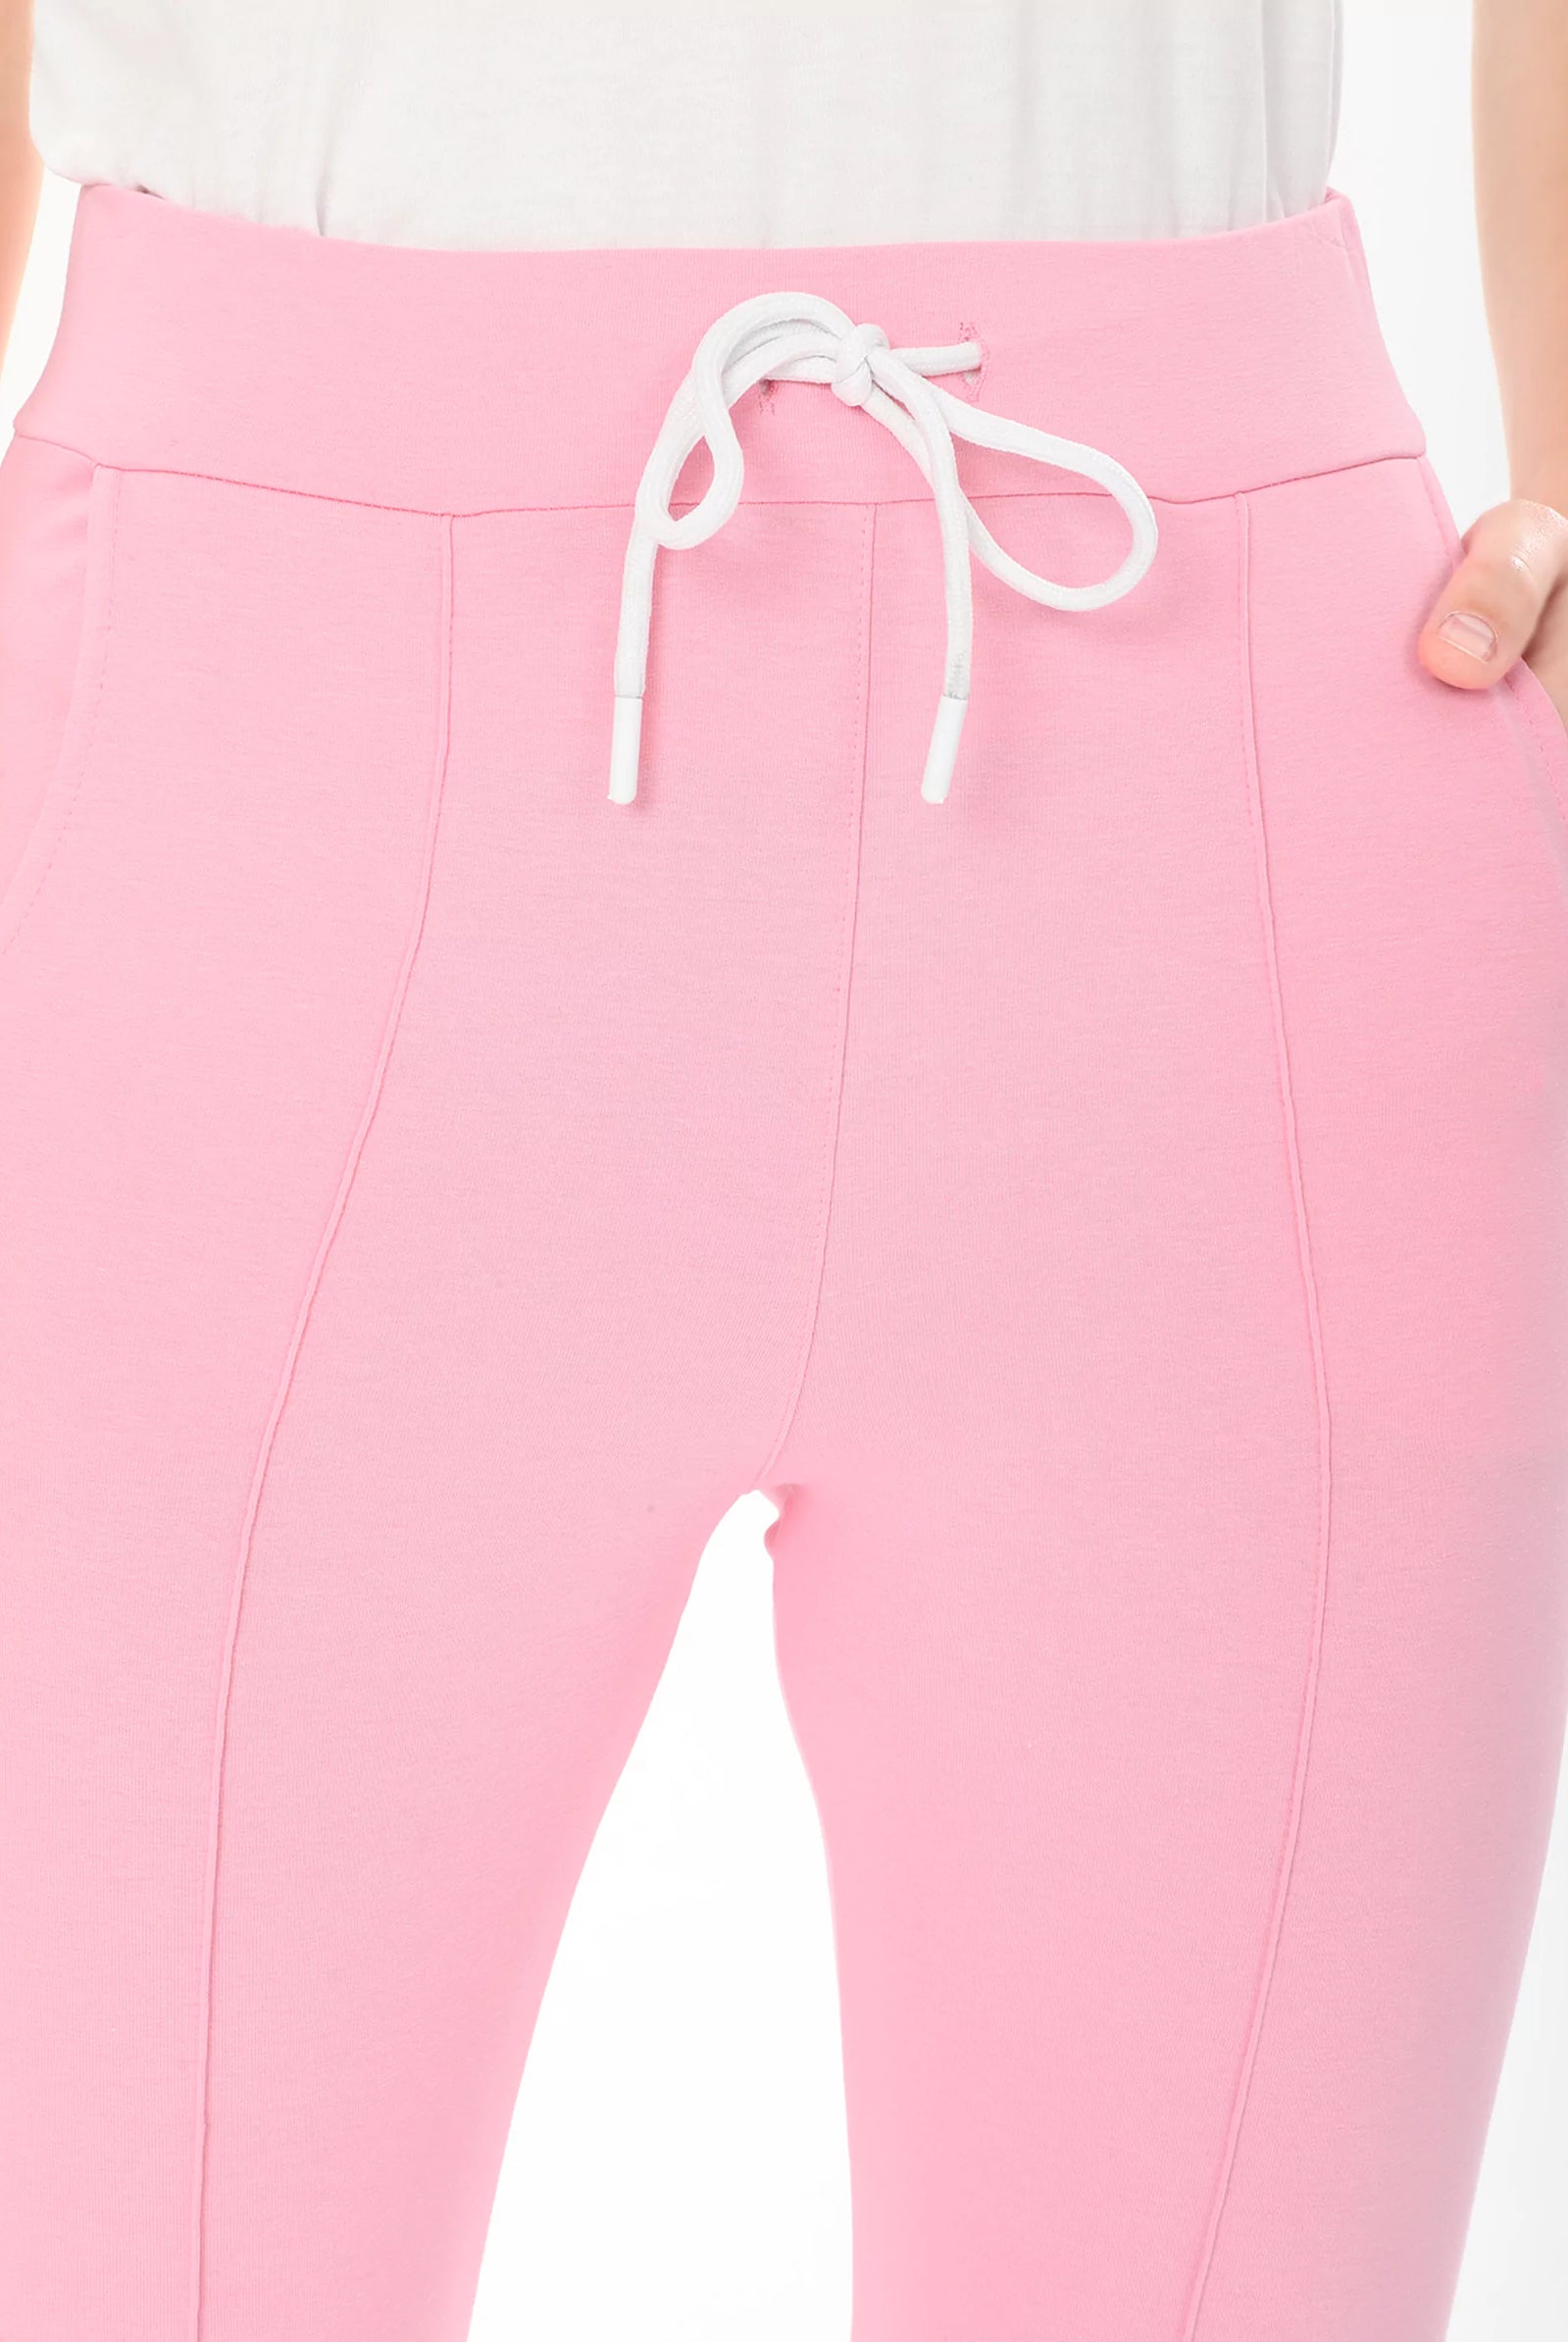 pink fleece pants for women